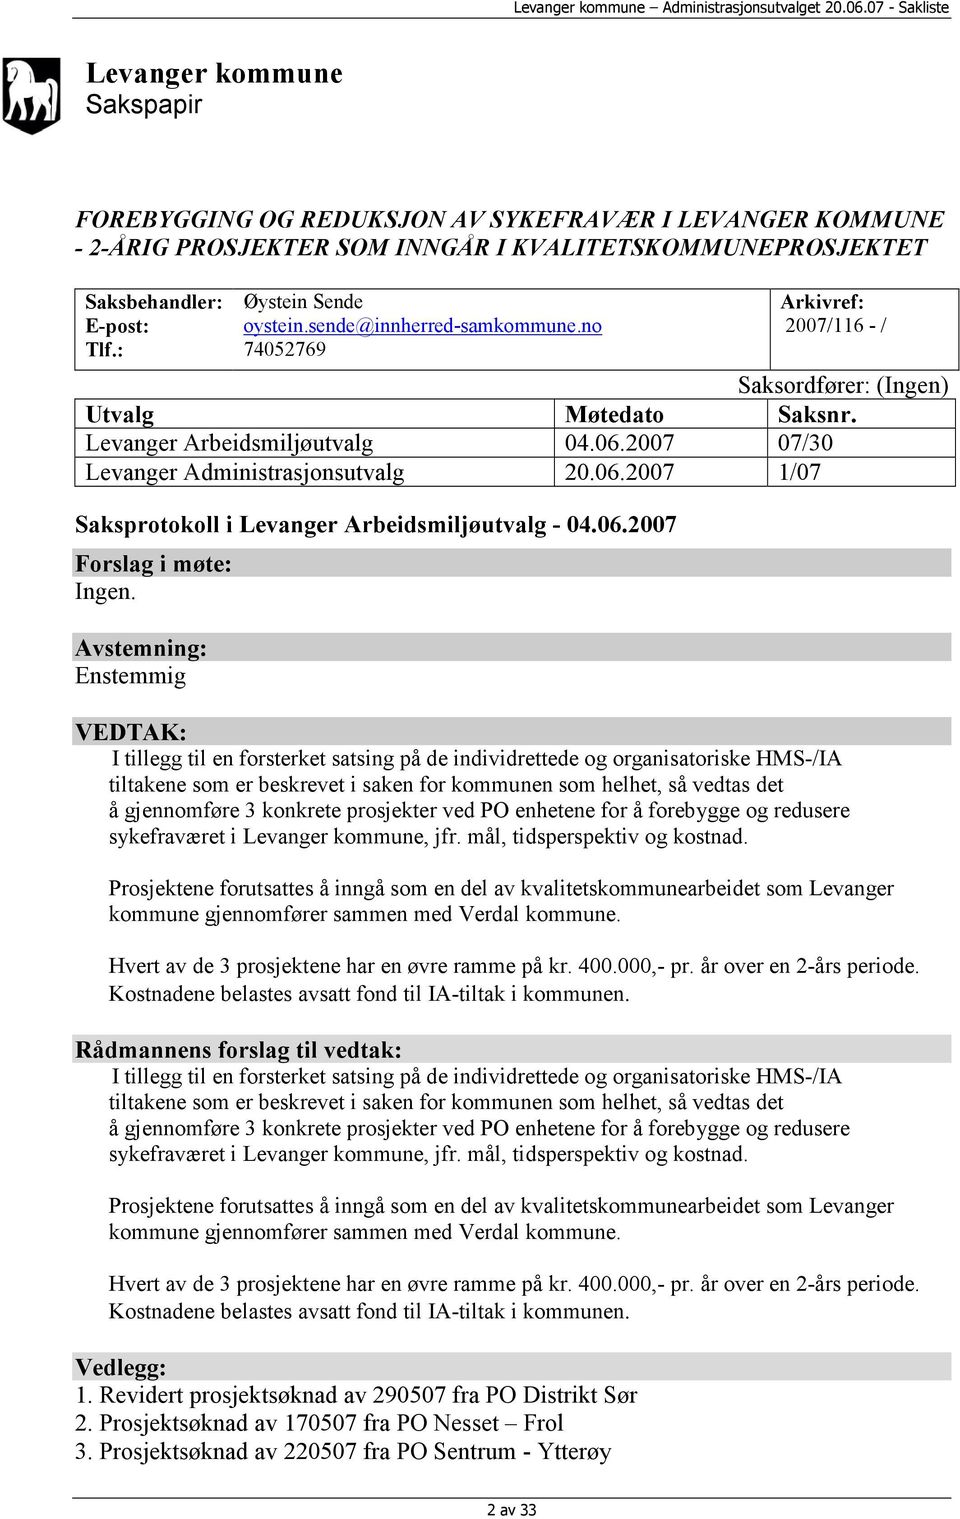 2007 07/30 Levanger Administrasjonsutvalg 20.06.2007 1/07 Saksprotokoll i Levanger Arbeidsmiljøutvalg - 04.06.2007 Forslag i møte: Ingen.